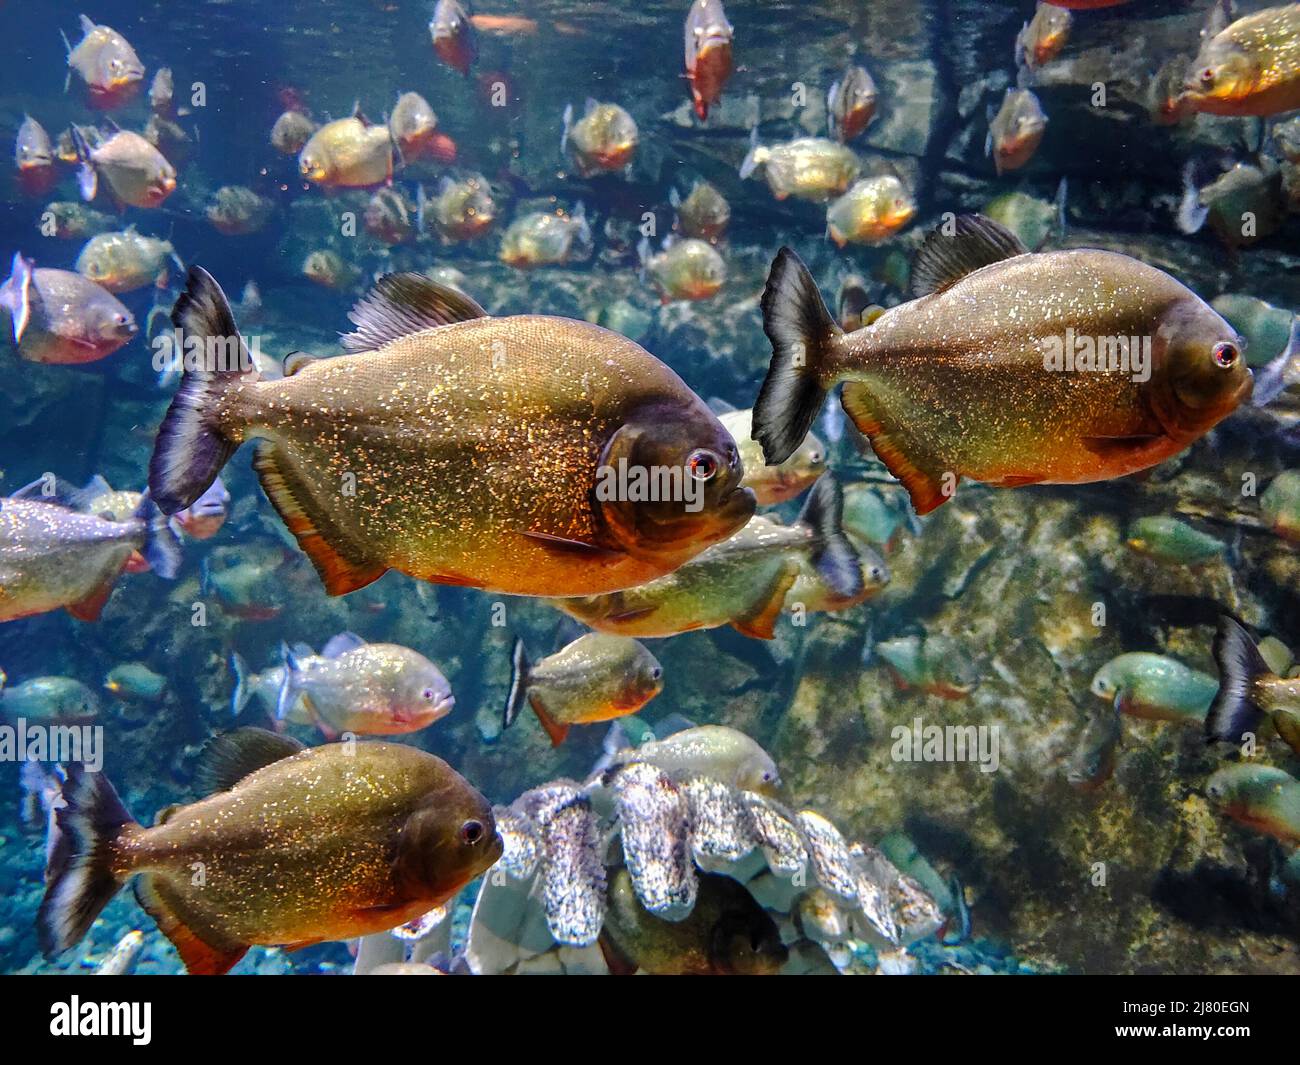 Close-up of piranha fish swimming in an aquarium Stock Photo